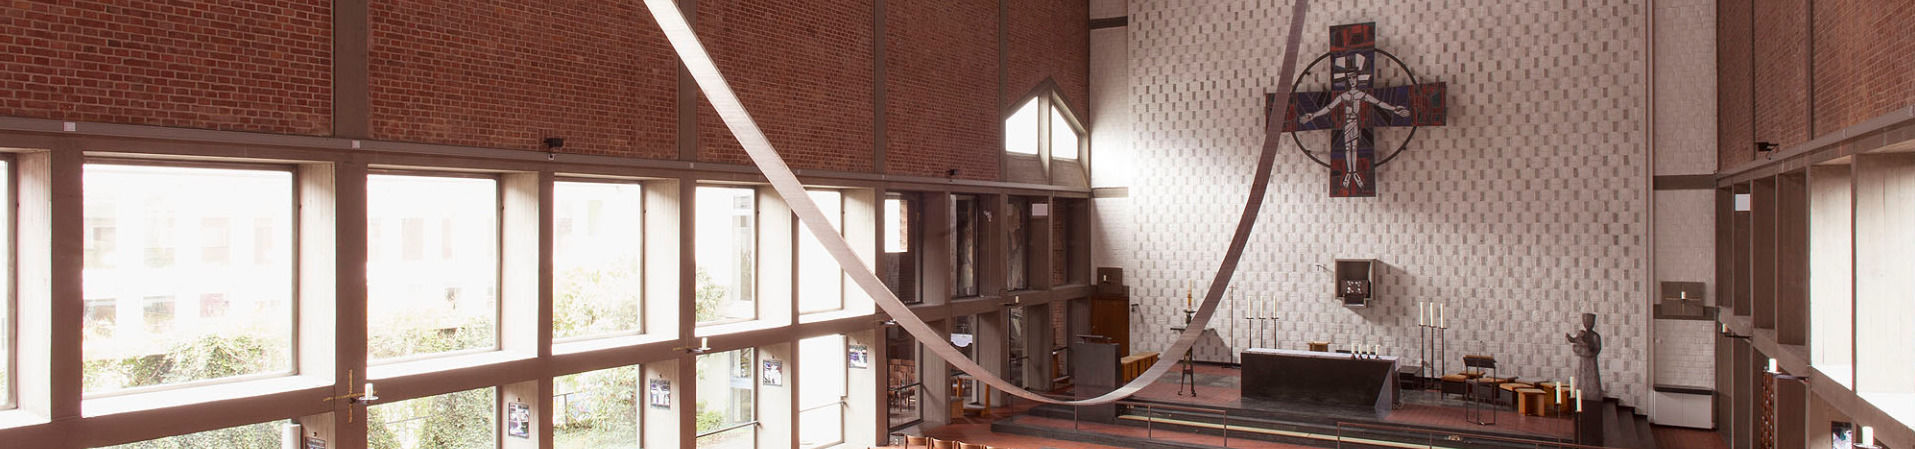 Installation „Statik der Resonanz“ in Elisabethkirche anlässlich documenta